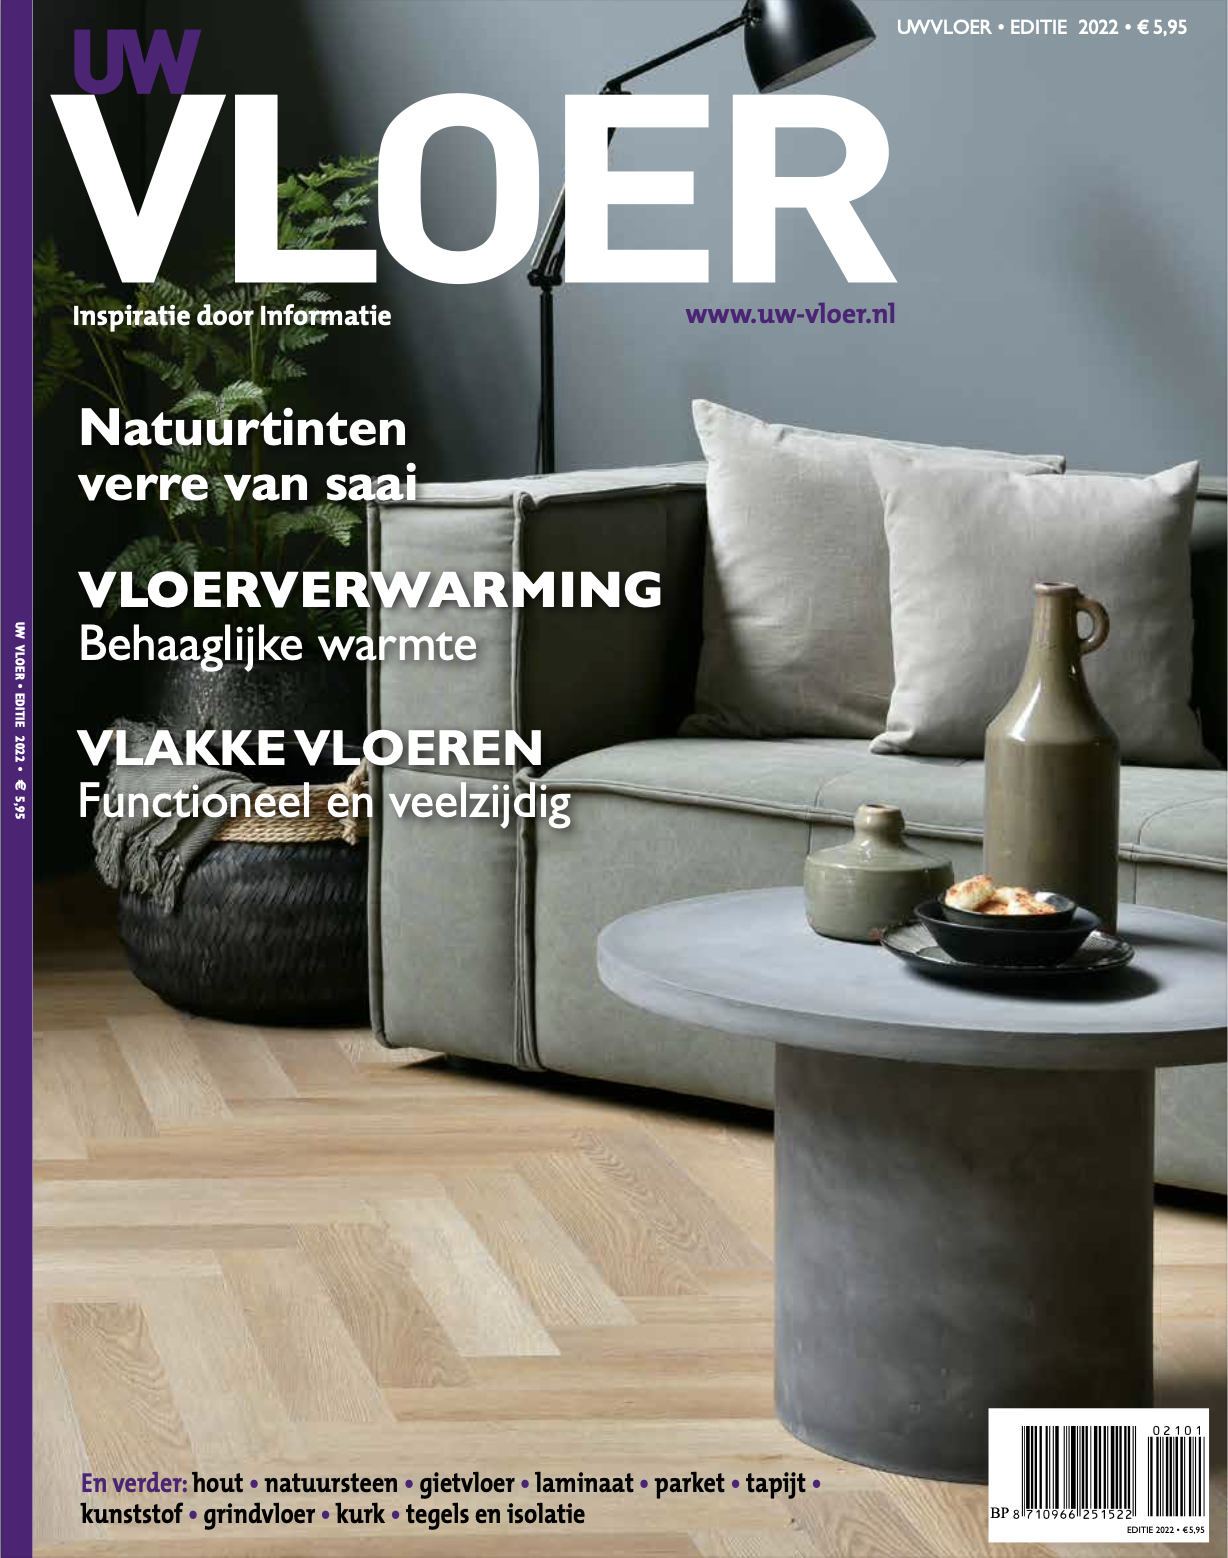 UW Vloer magazine. Alles over vloeren. Informatie en inspiratie bij het kiezen van een nieuwe vloer #vloer #uwvloer #uwvloermagazine #vloeren #interieur #woonmagazine